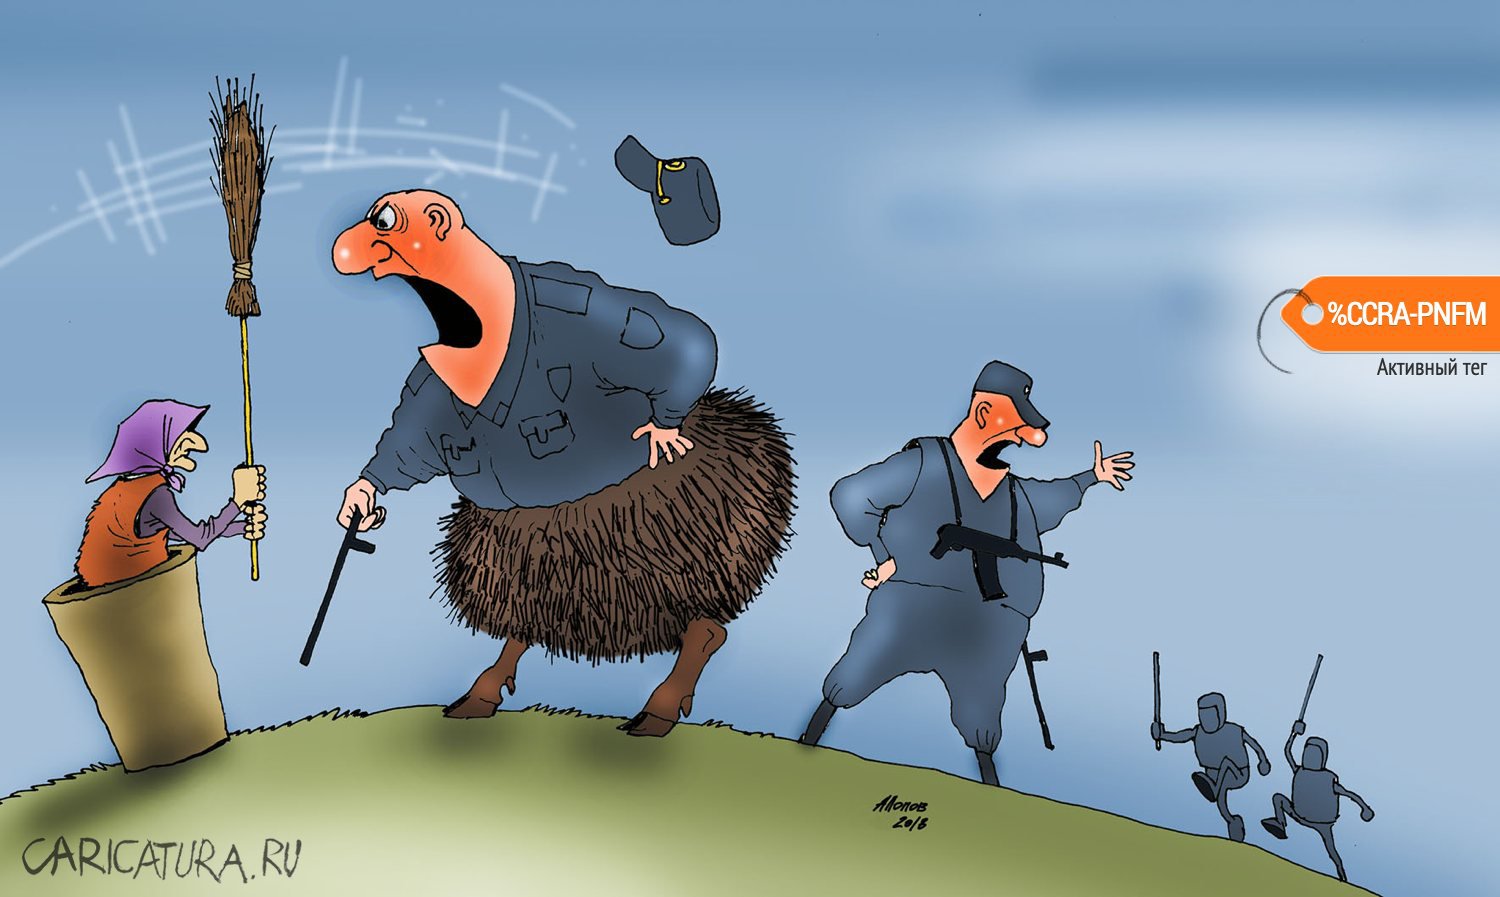 Карикатура "В начале было слово", Александр Попов